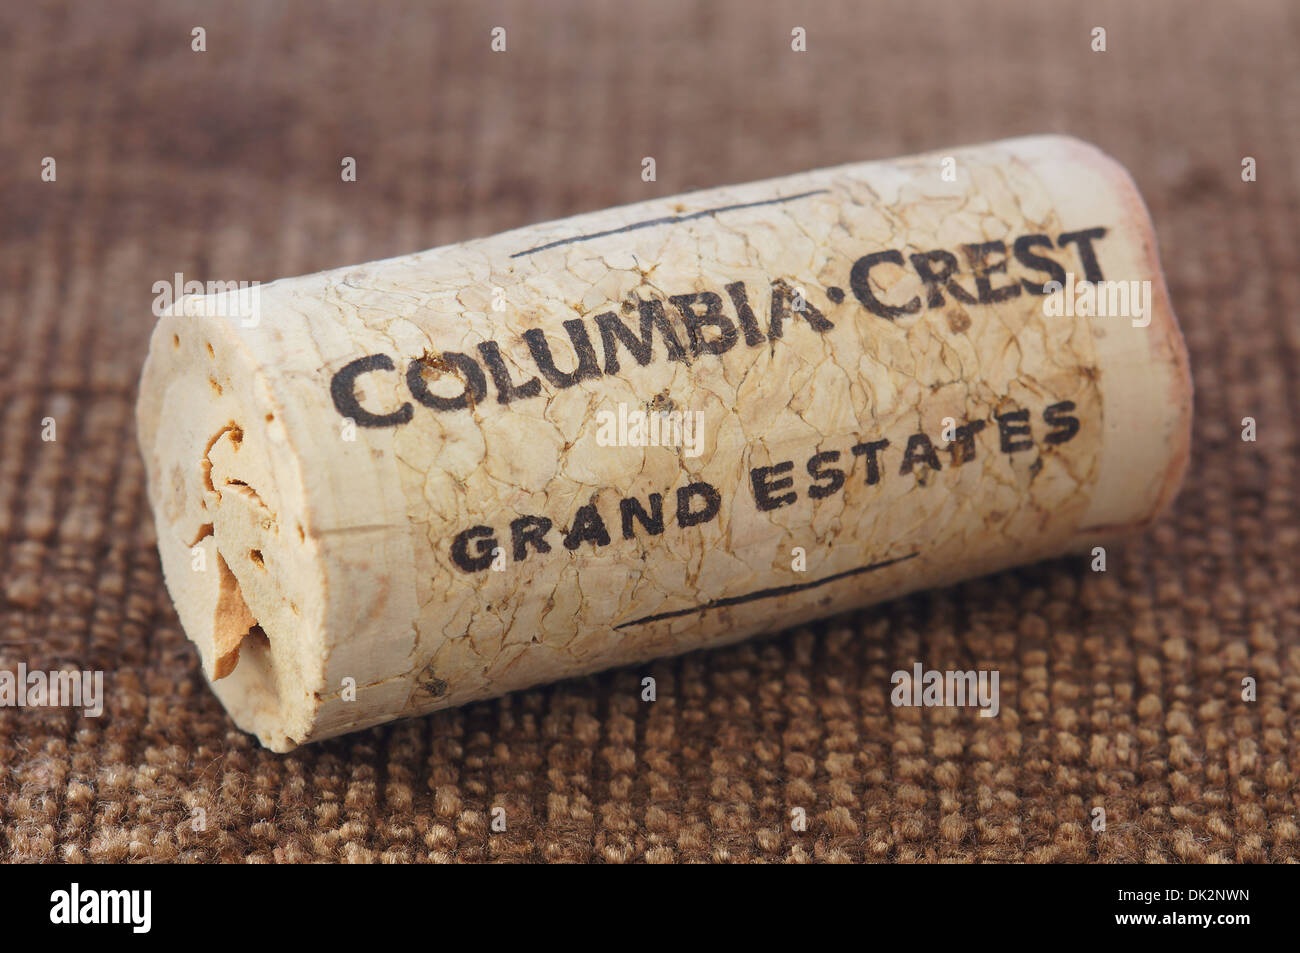 Columbia Crest Grand Estates Wein Korken Stockfoto